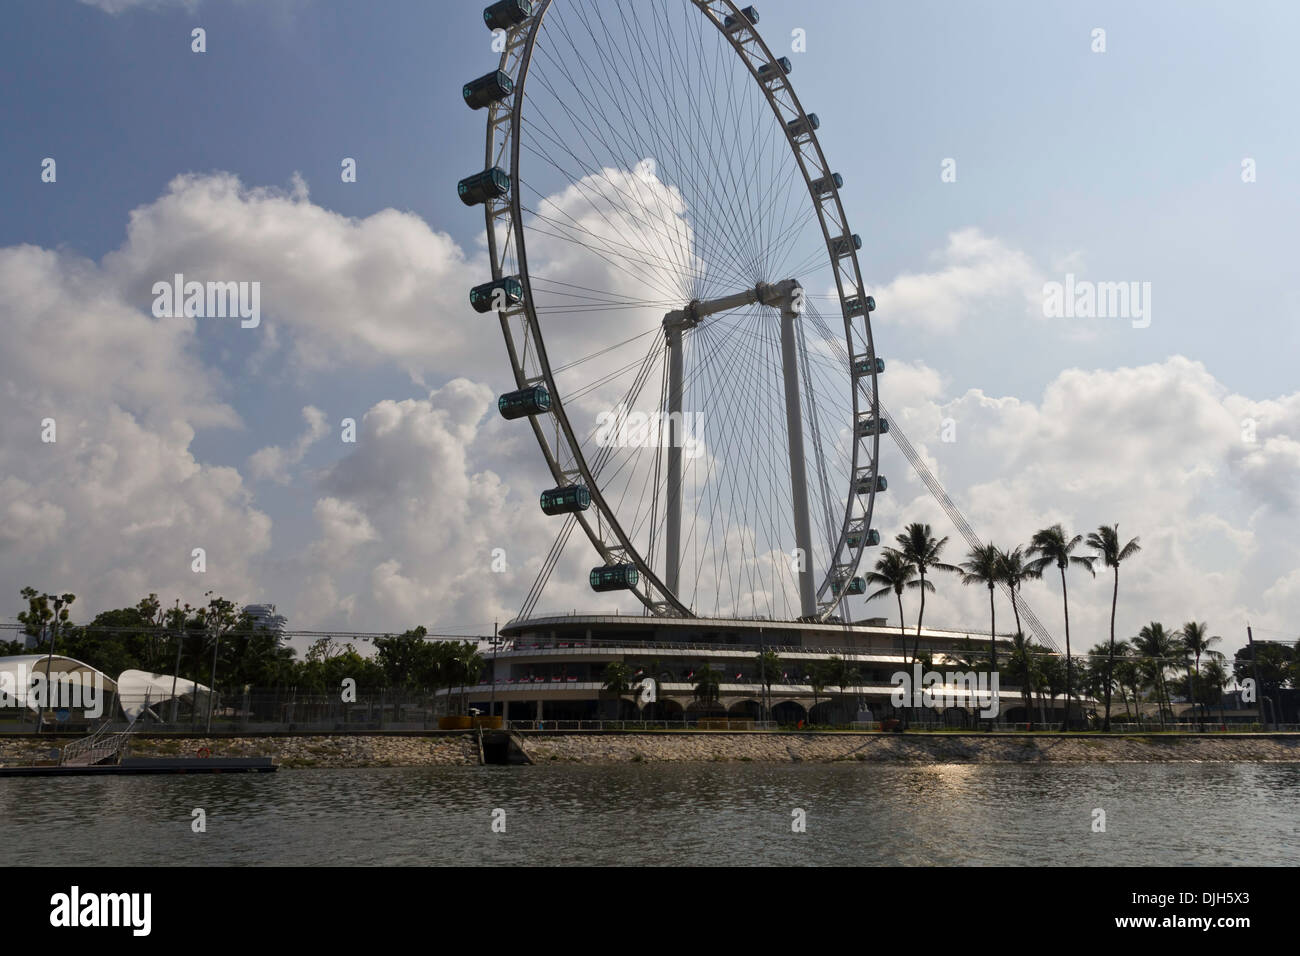 La struttura parziale del Singapore Flyer e il serbatoio di acqua nella zona della Marina, con le nuvole nel cielo in background Foto Stock